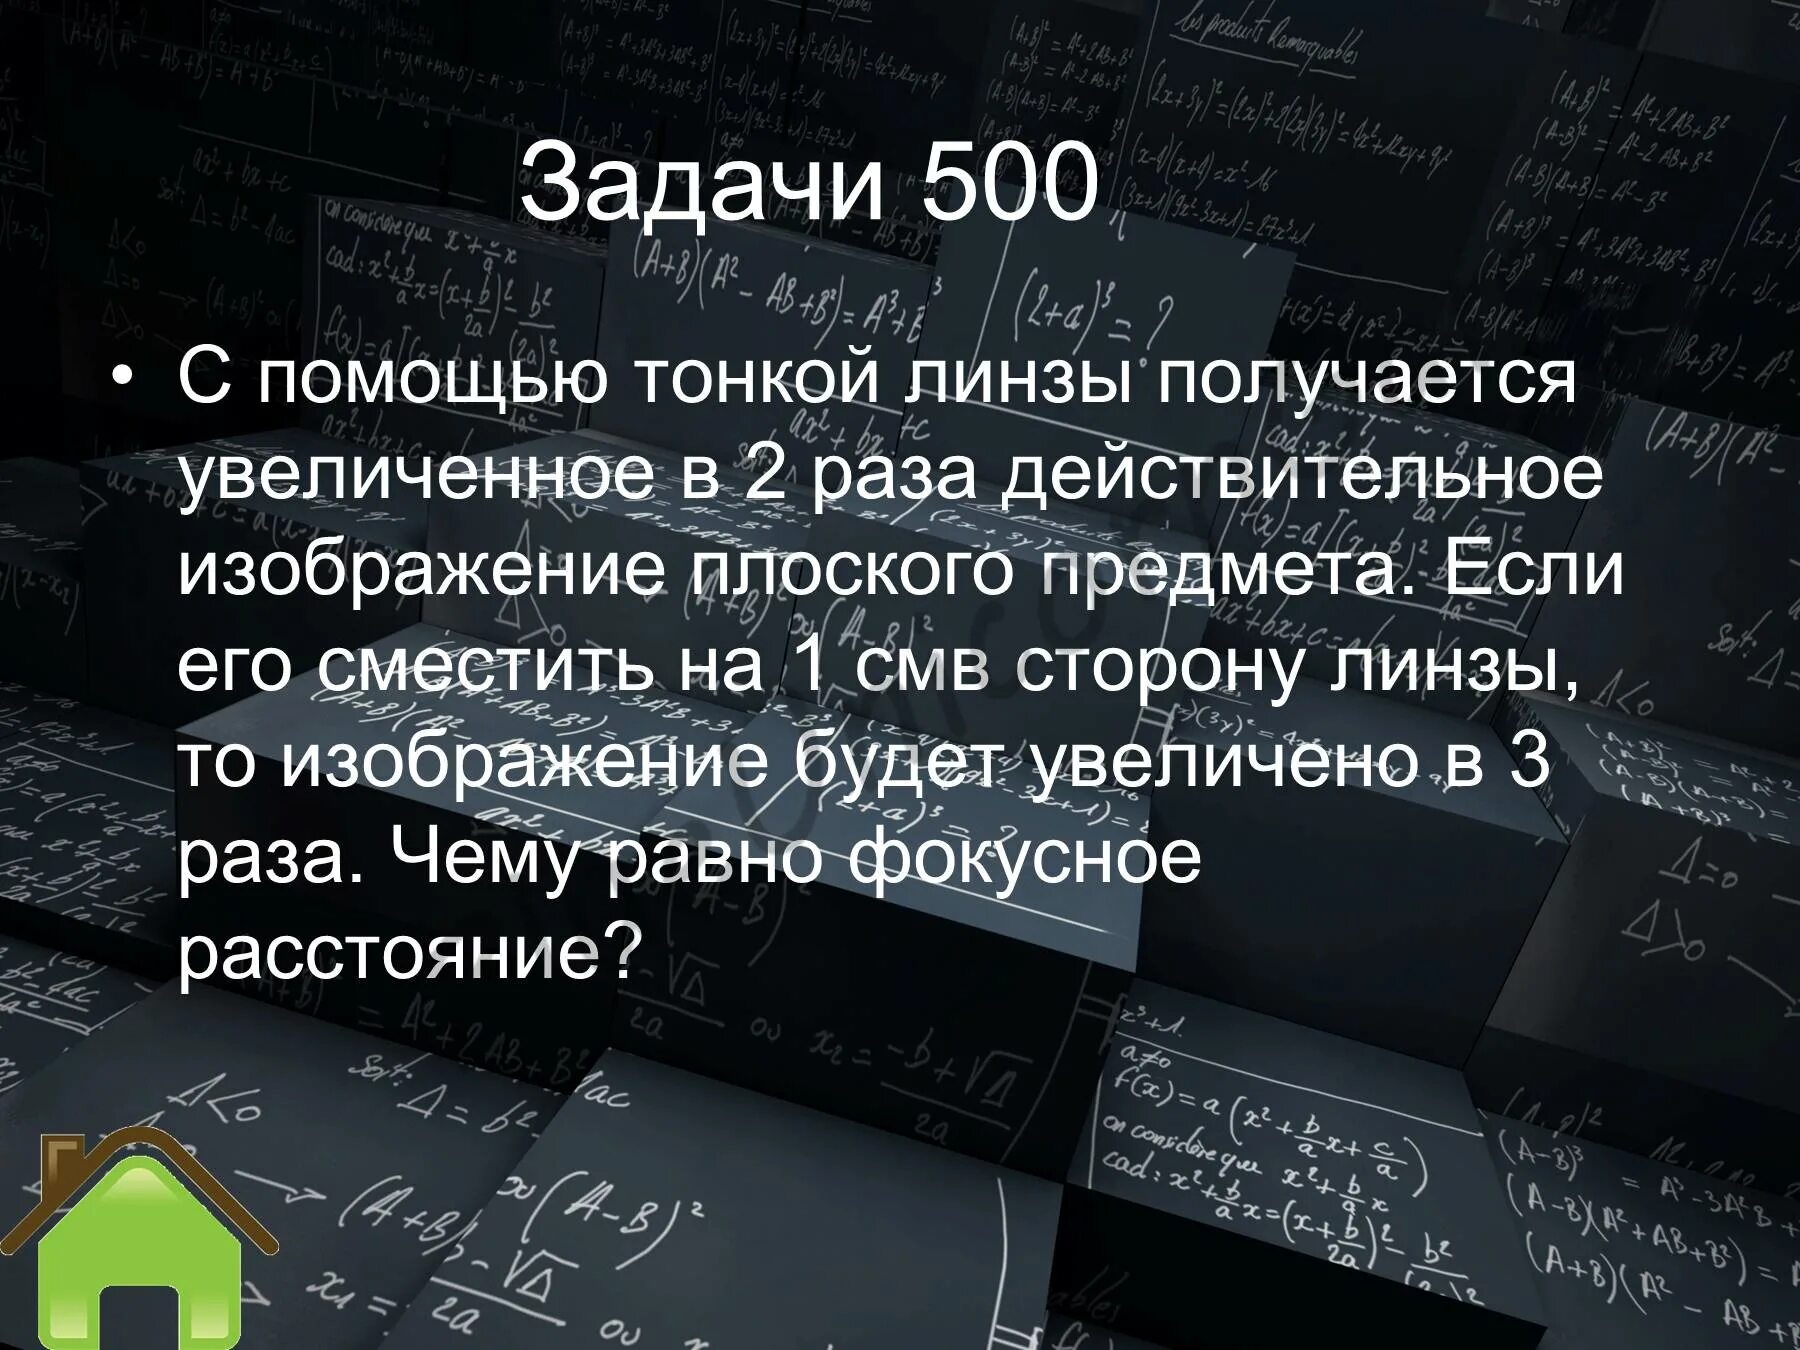 Задача было 500 рублей. С помощью тонкой линзы получается увеличенное в 2 раза.